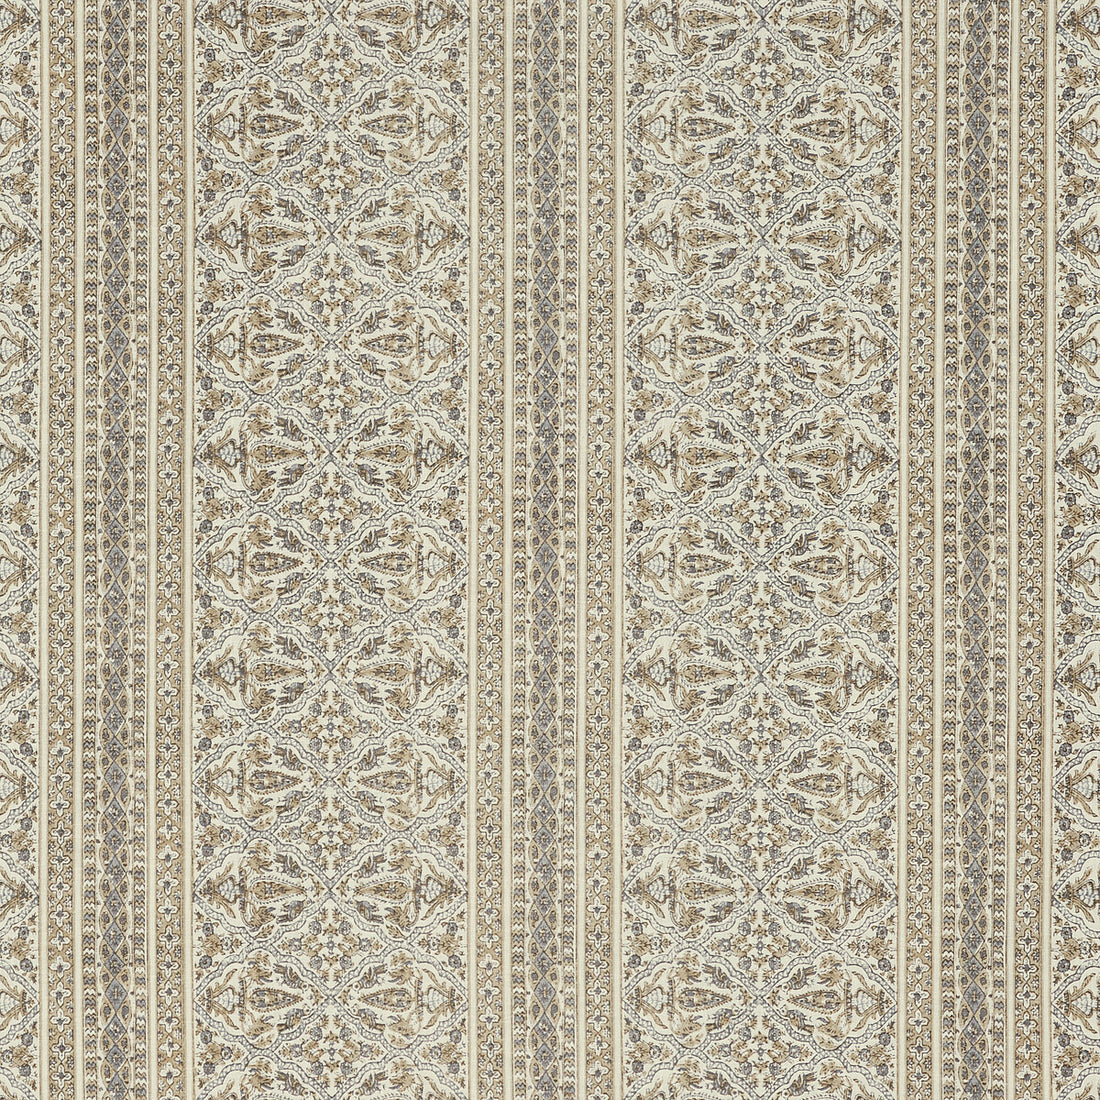 Kravet Basics fabric in mysore-11 color - pattern MYSORE.11.0 - by Kravet Basics in the L&